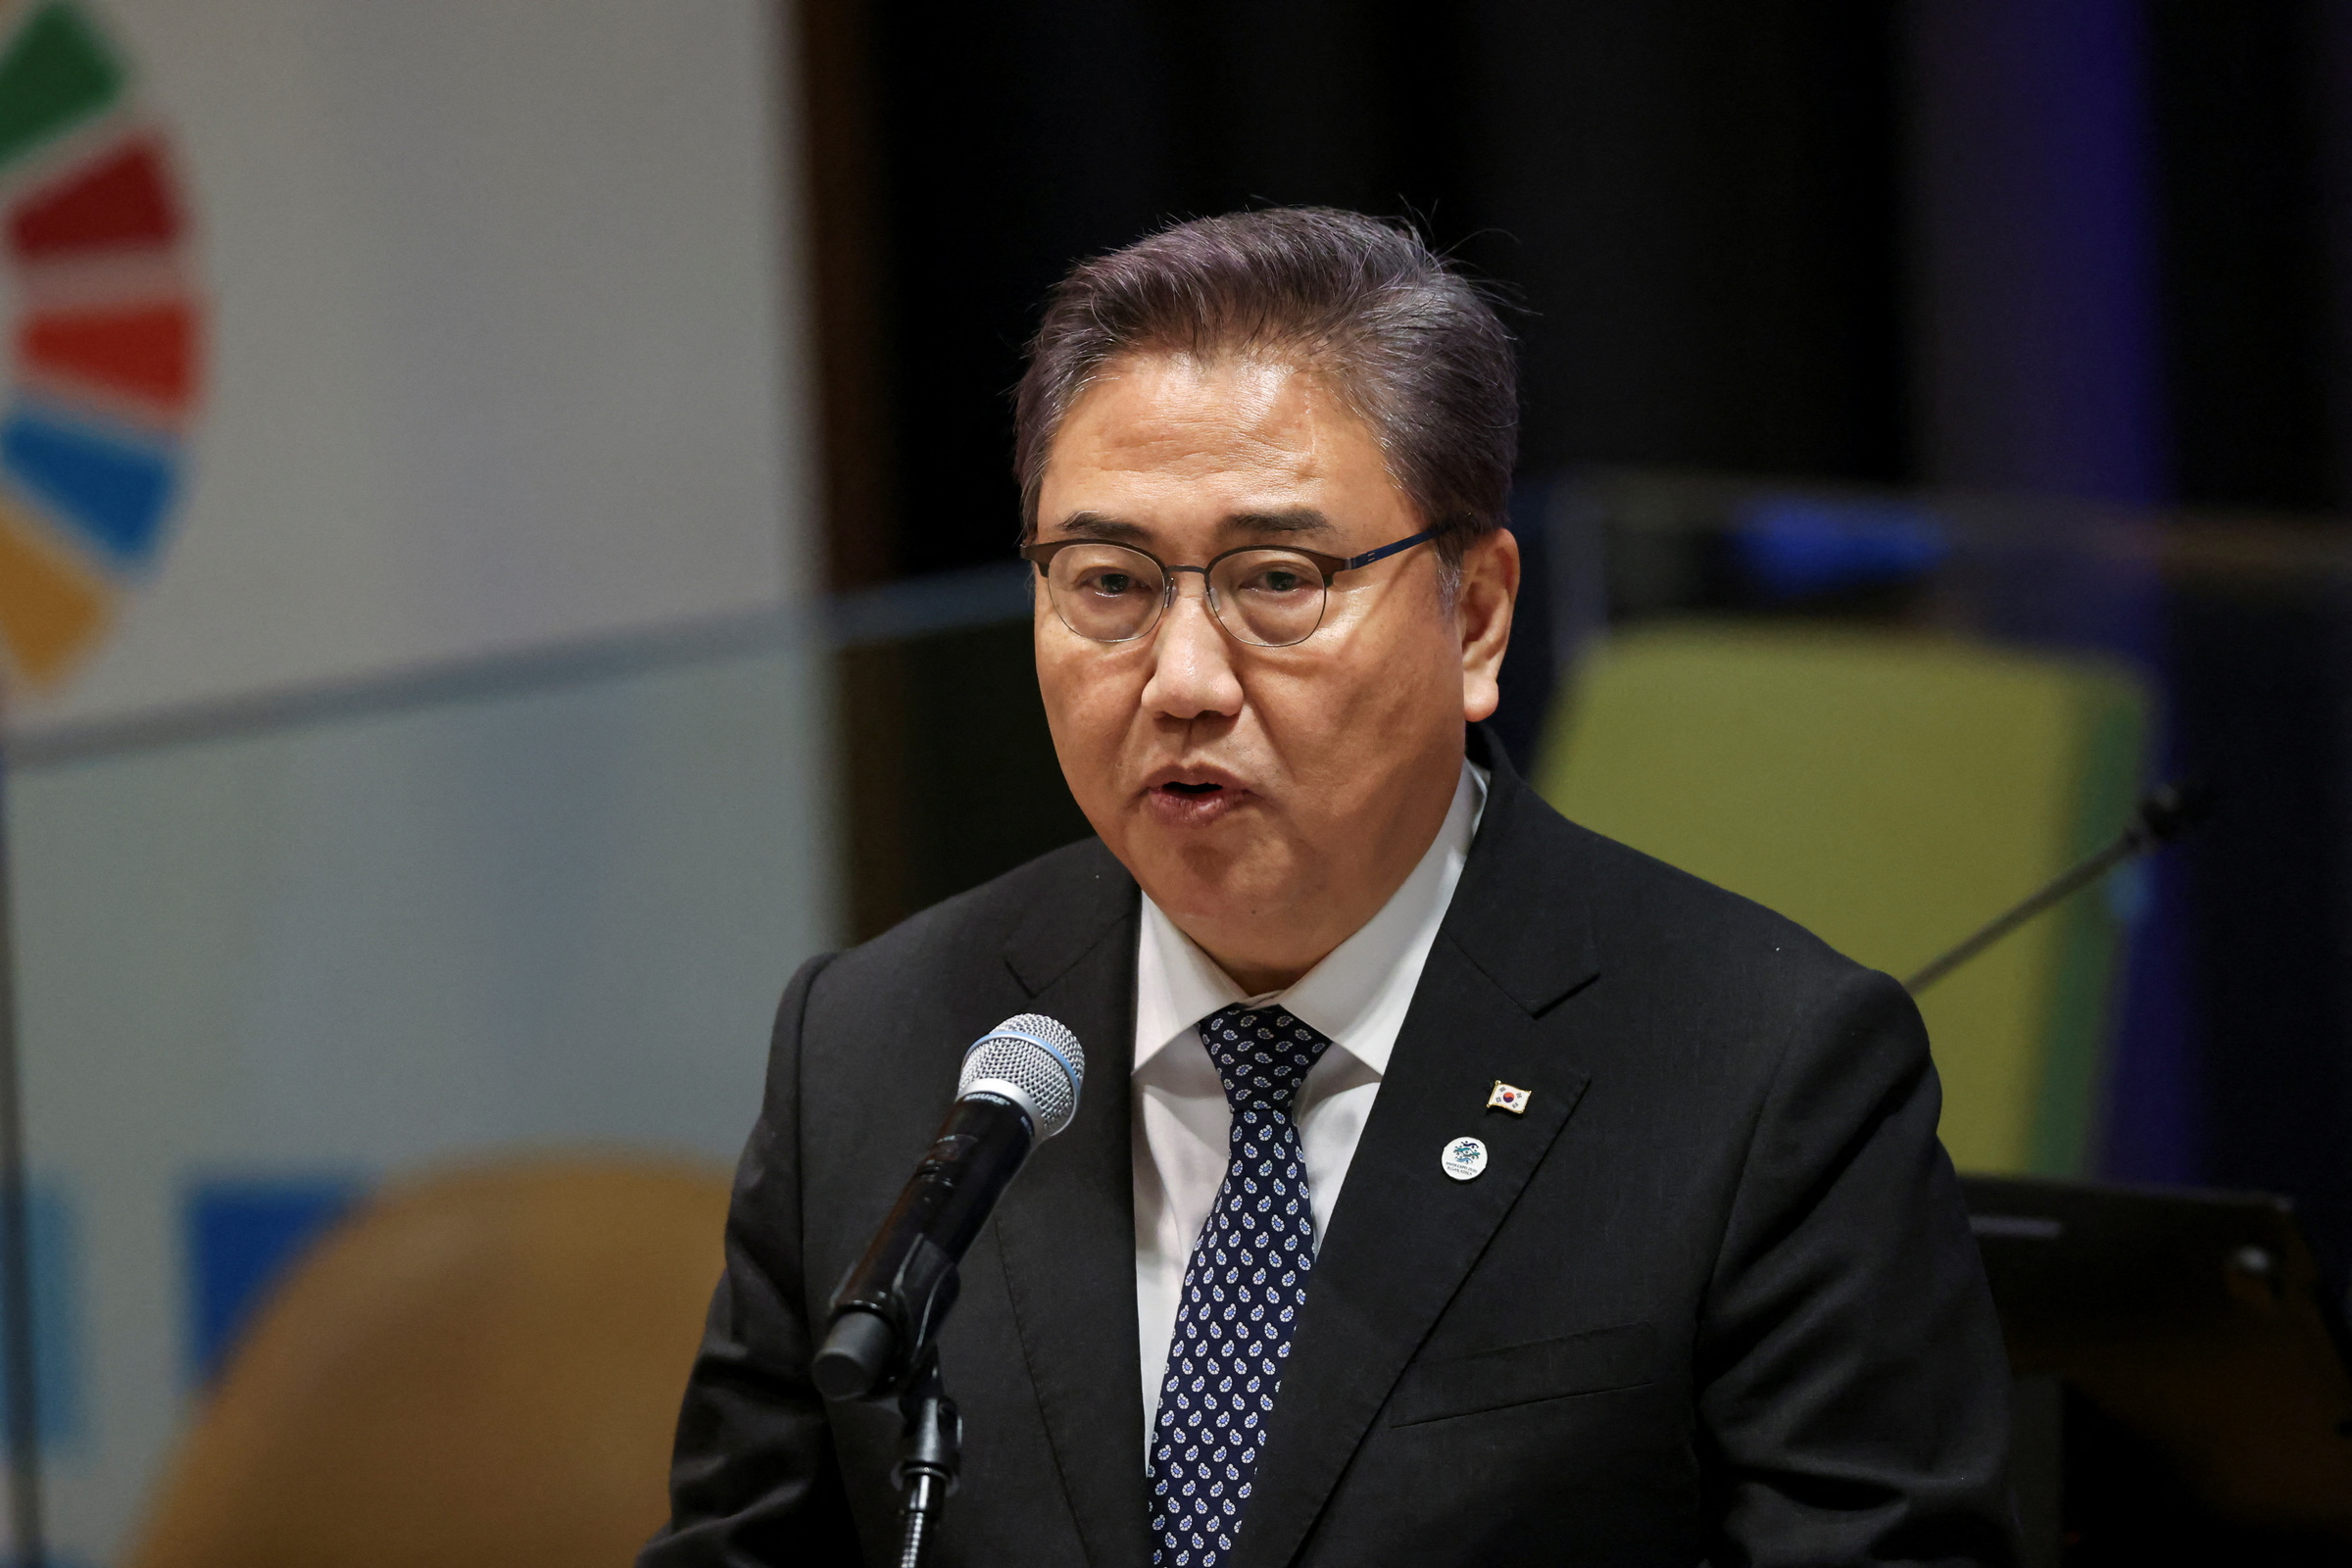 Ngoại trưởng Hàn Quốc Park Jin phát biểu tại trụ sở Liên Hợp Quốc, New York, Mỹ ngày 18/9. Ảnh: Reuters